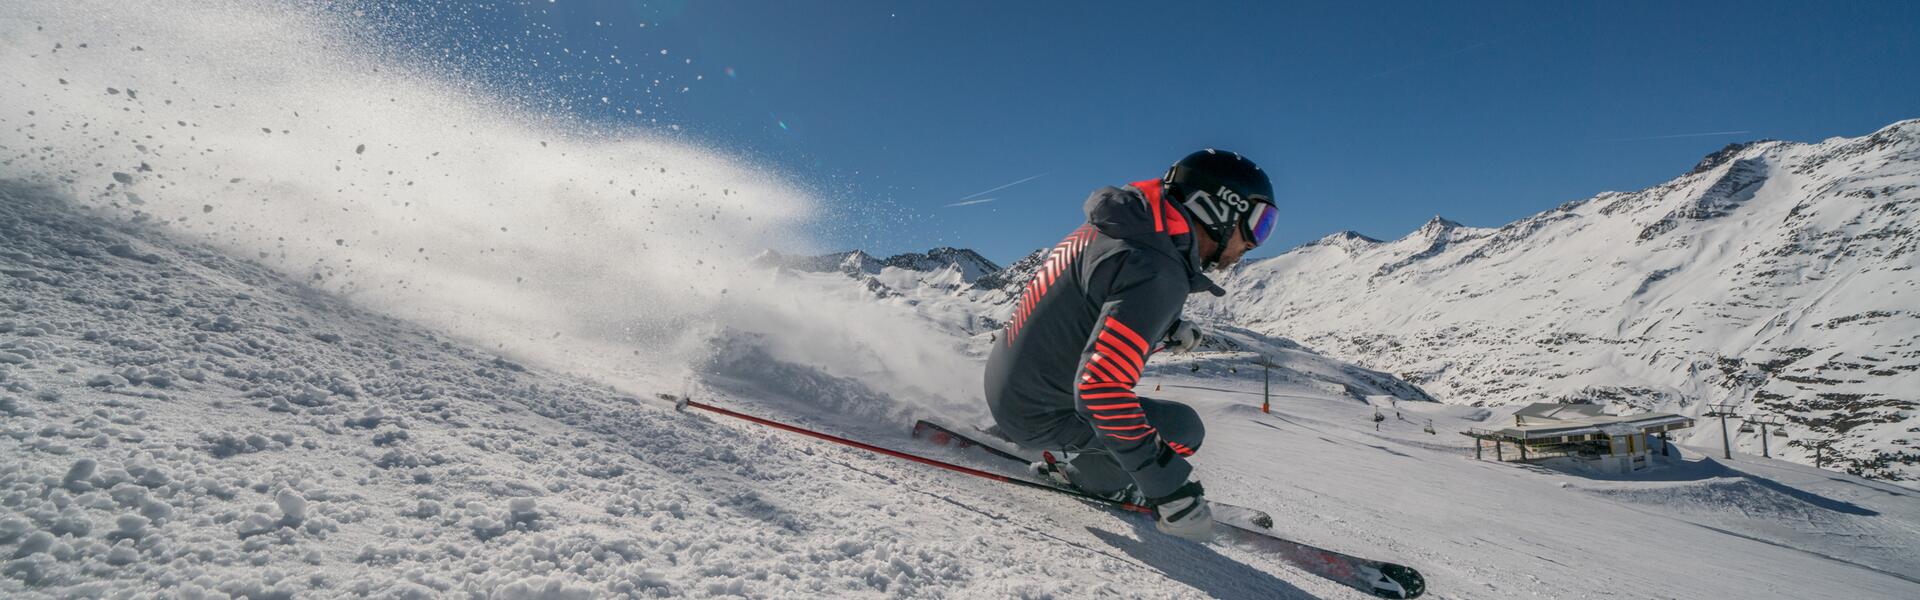 Ski rental prices at Scheiber Sport in Obergurgl | © Scheiber Sport